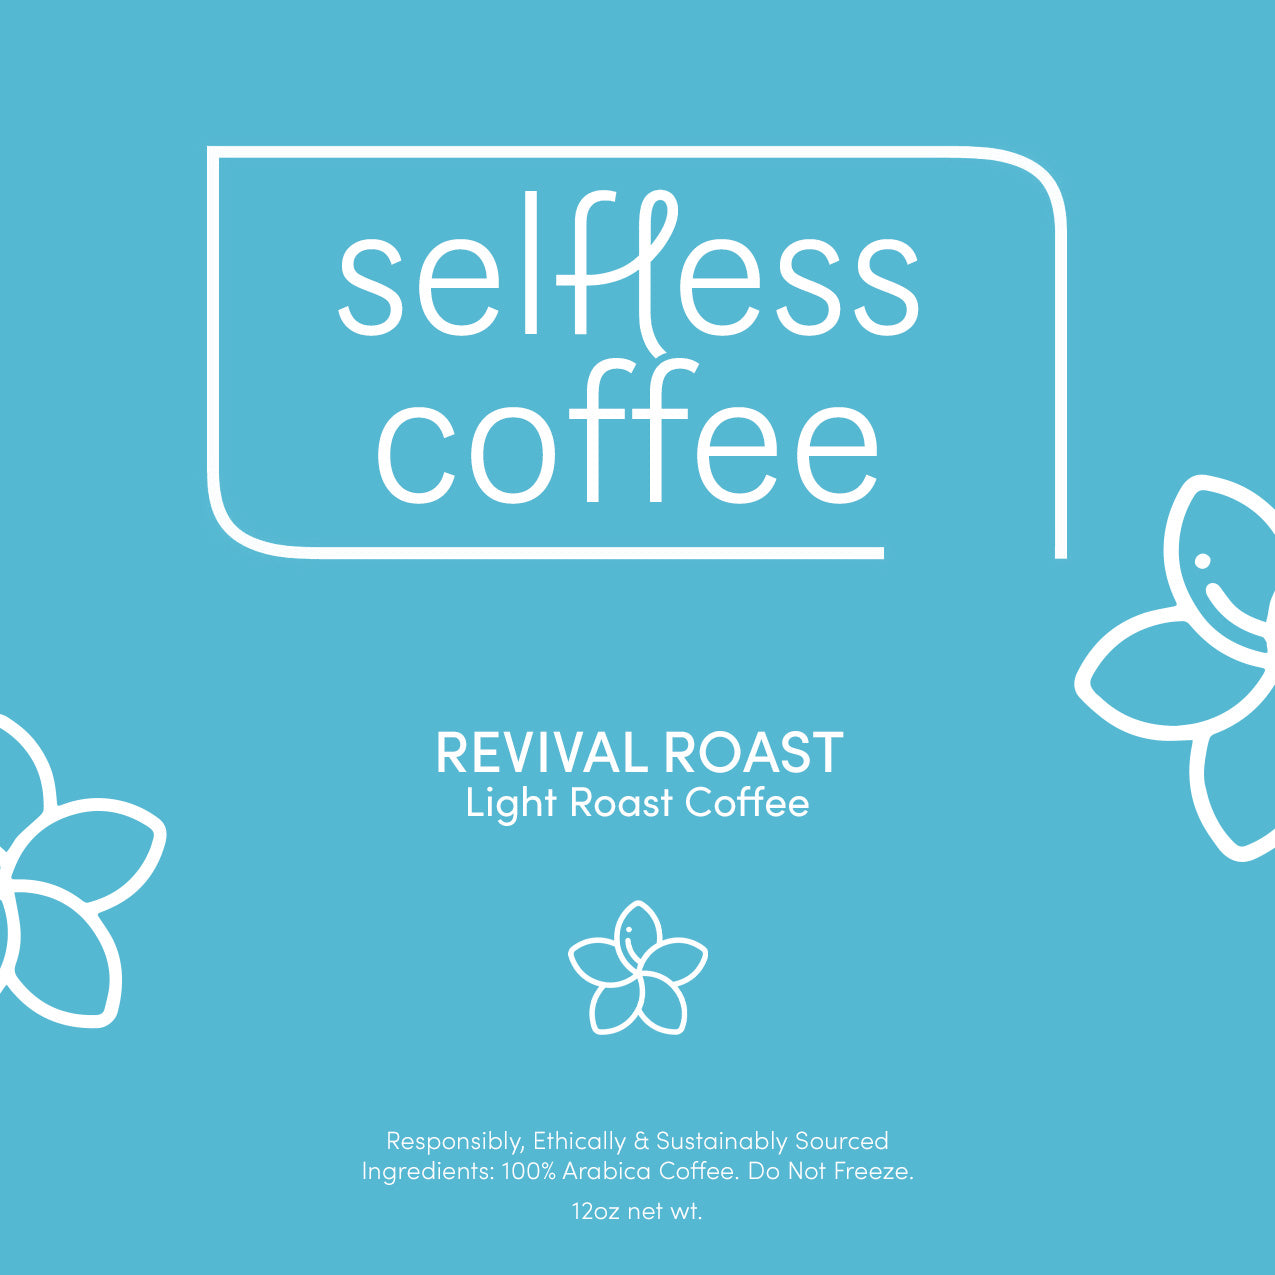 Revival Roast: Light Roast Coffee